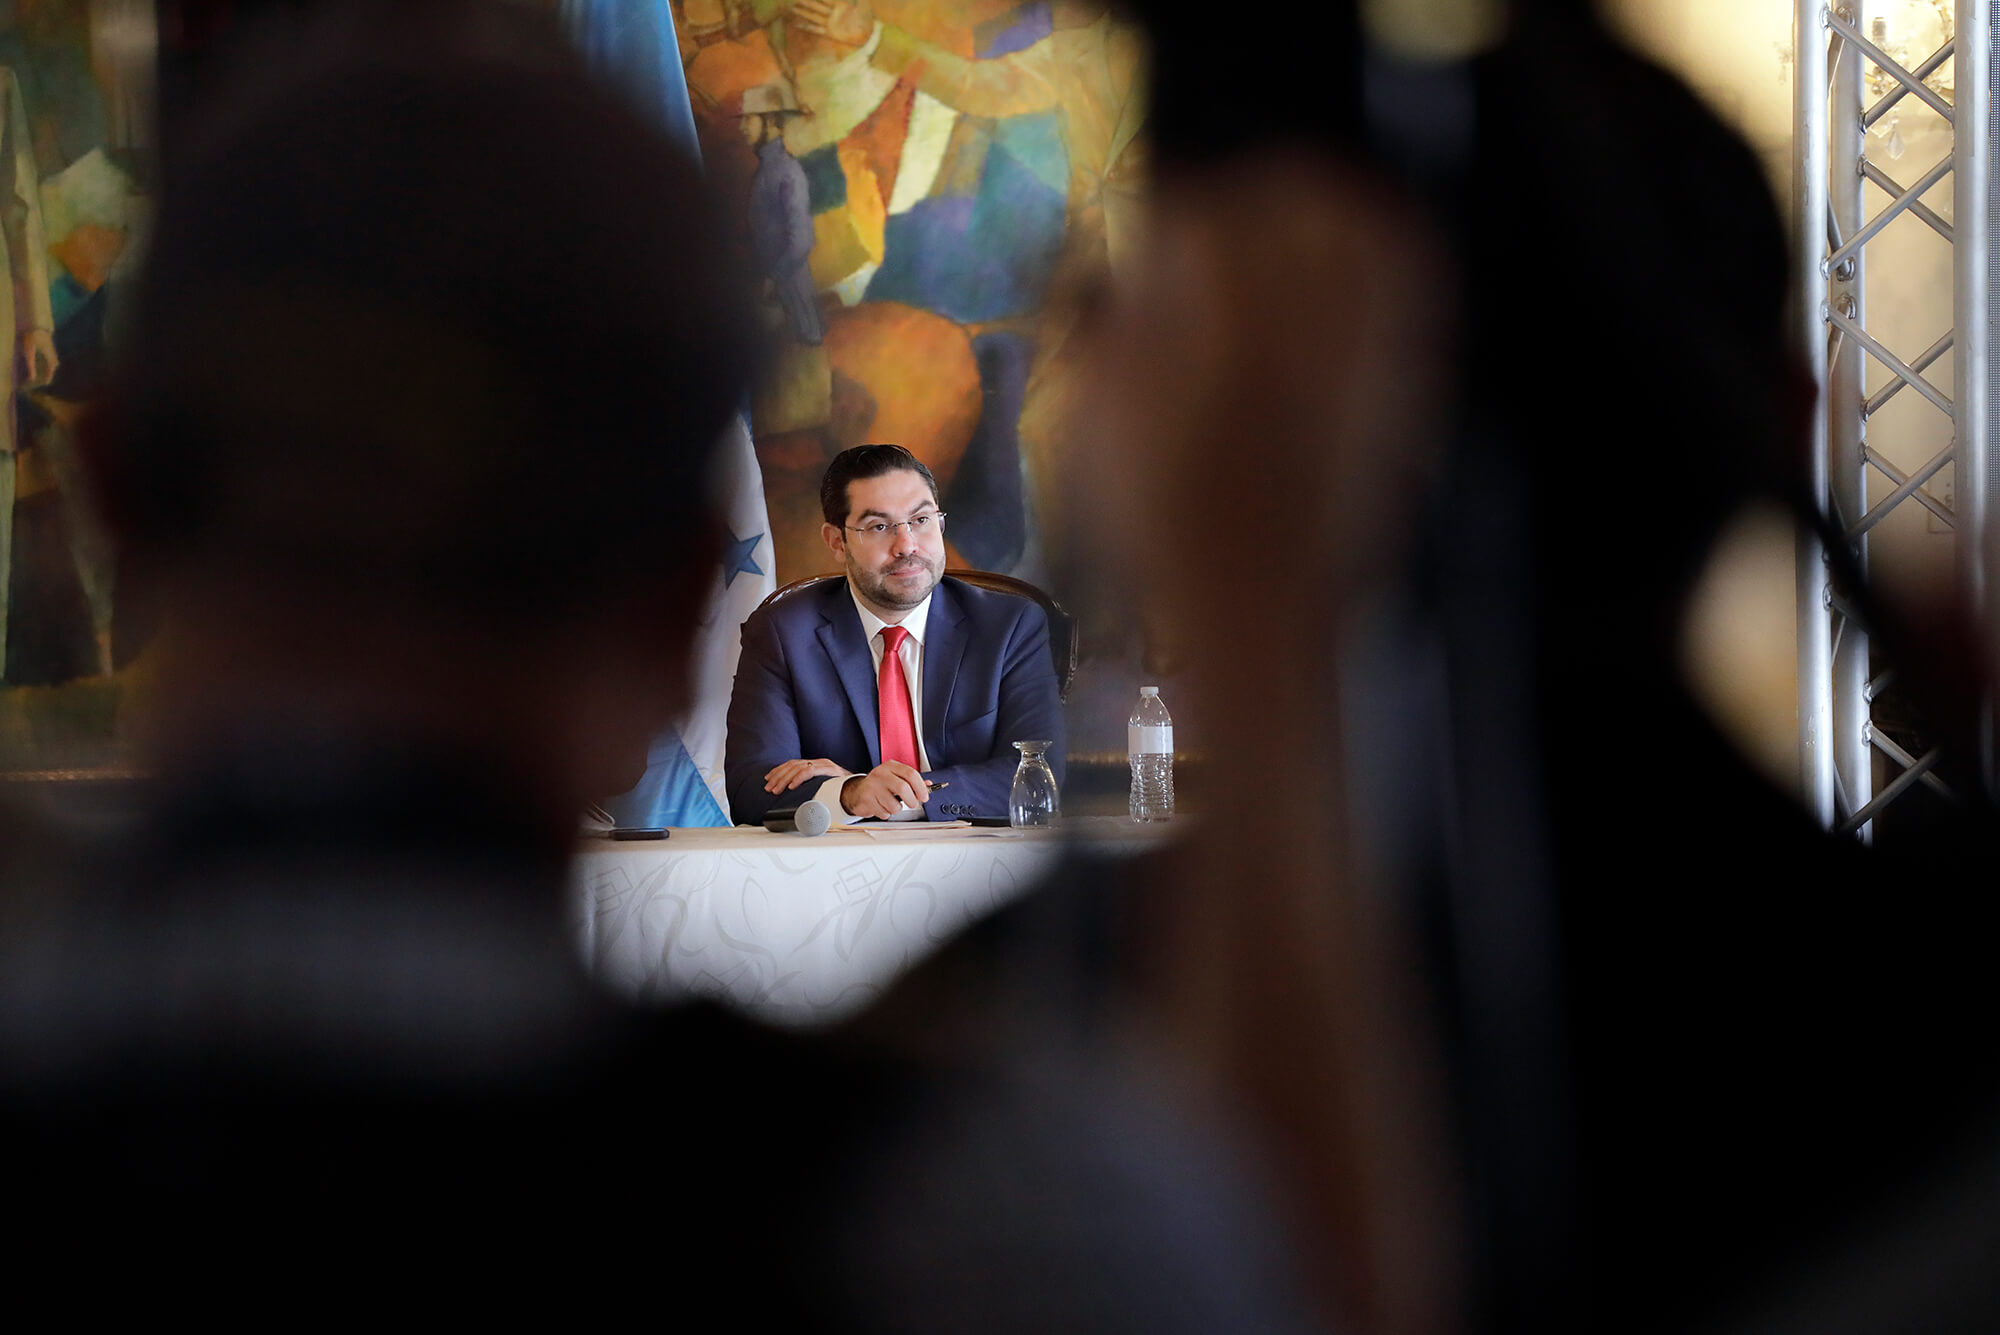 El diputado Jorge Calix se observa después de una reunión privada en Casa de Gobierno, Tegucigalpa, Honduras.